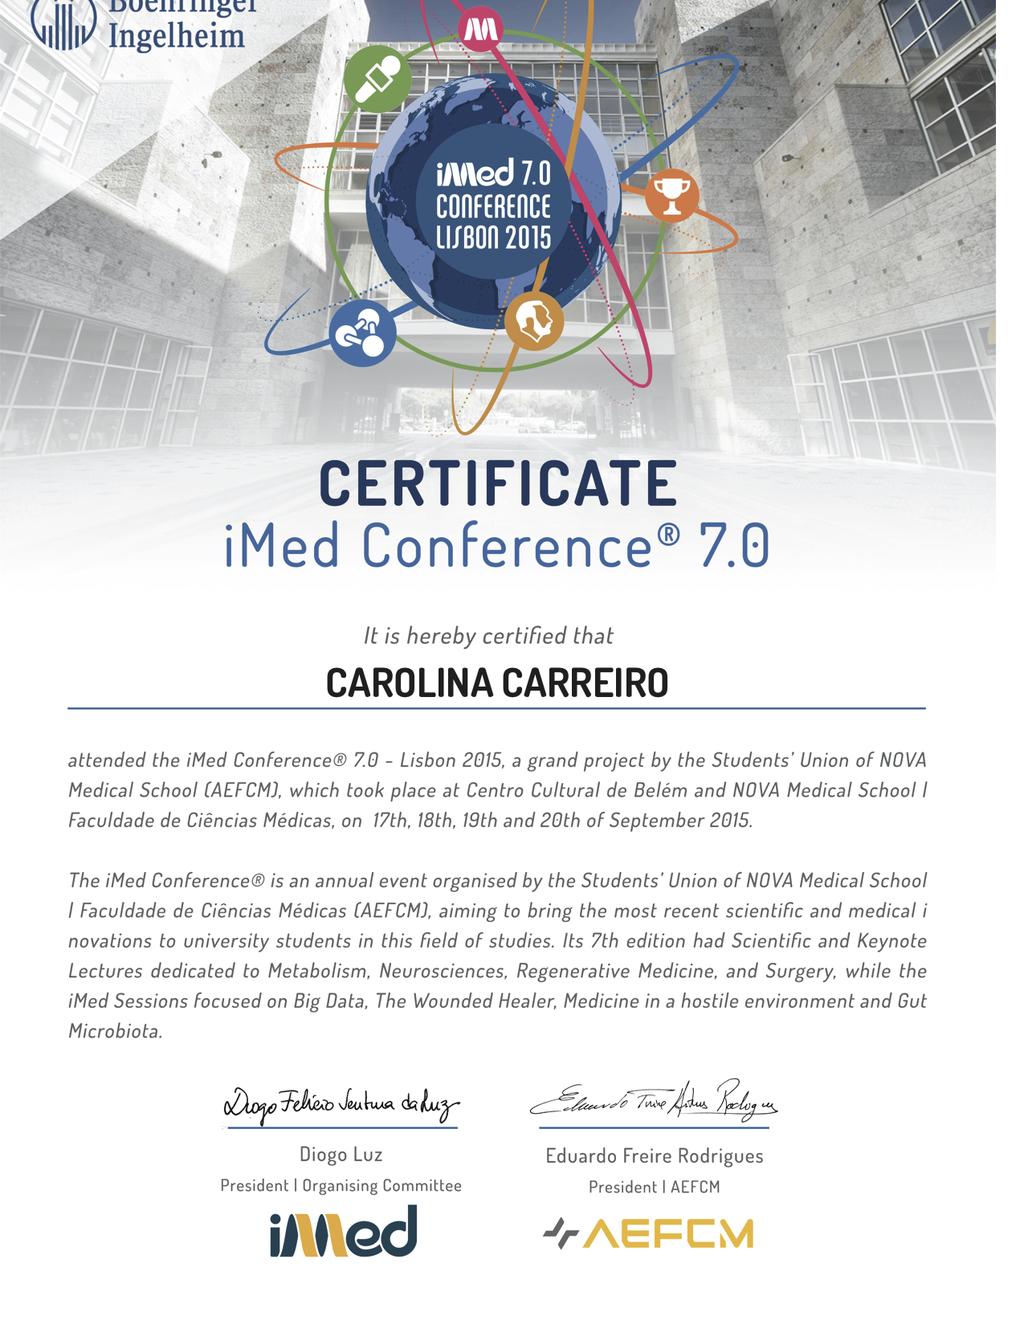 Anexo I Certificado de Participação no imed Conference 7.